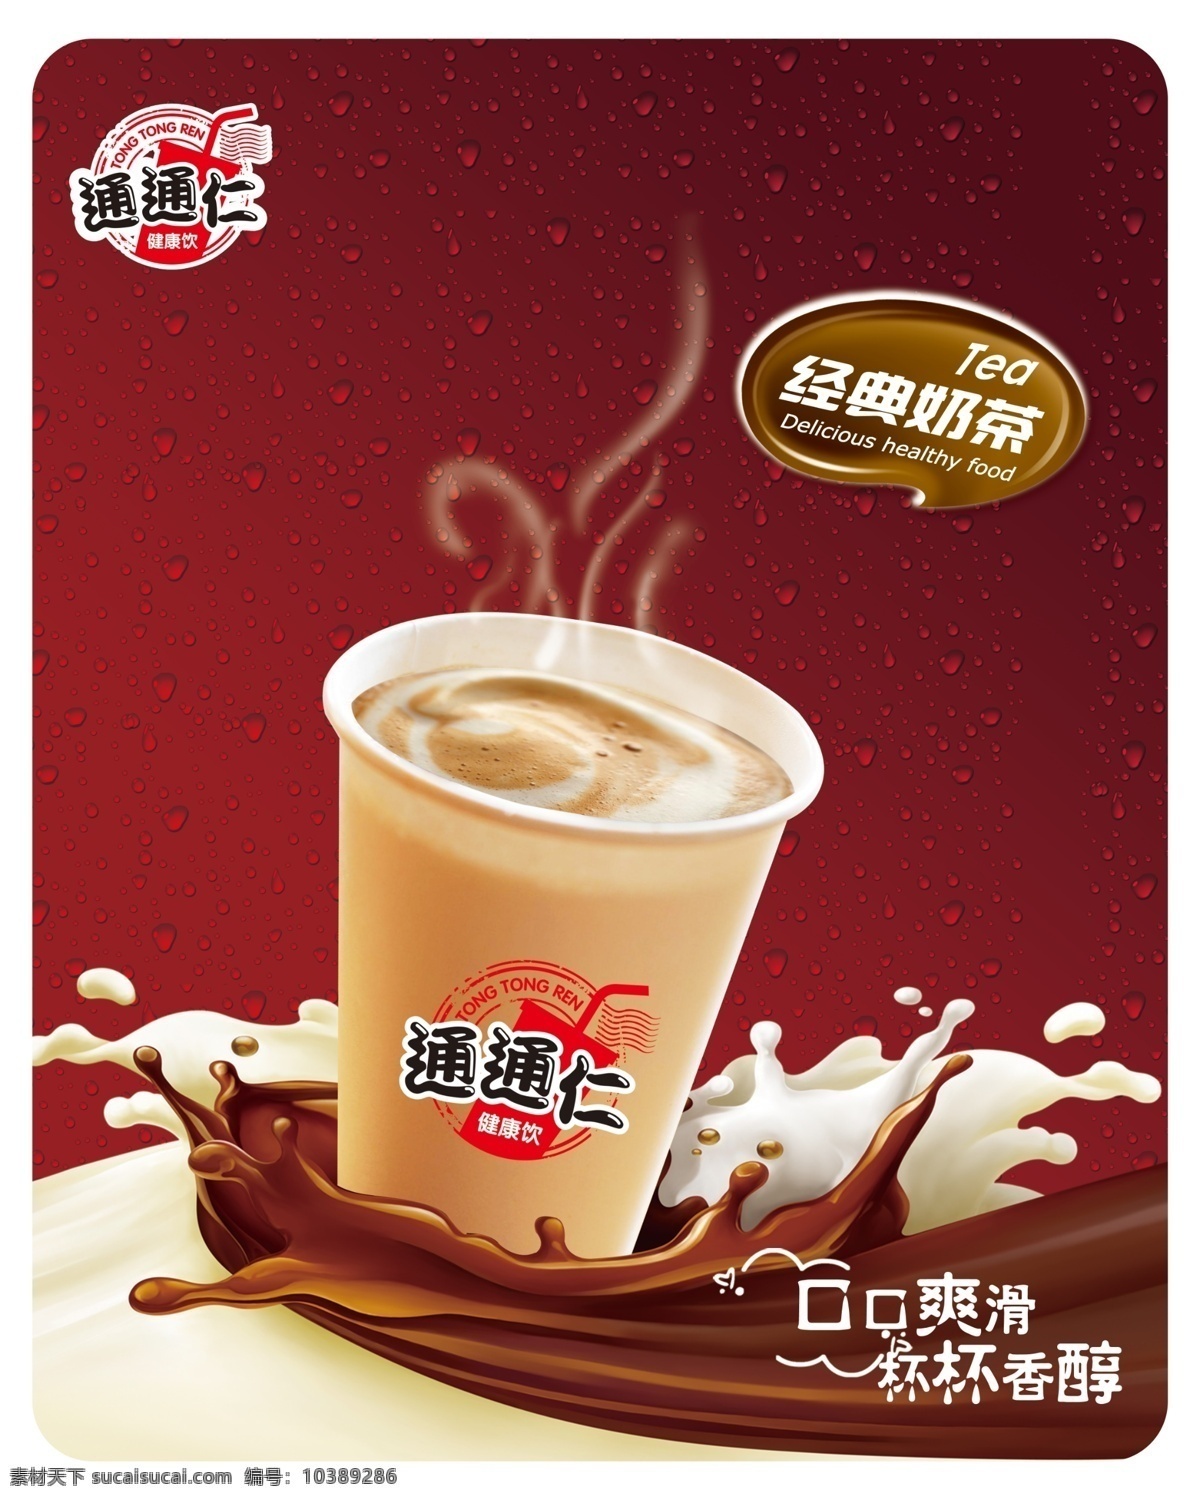 奶茶海报 奶茶 经典奶茶 牛奶 咖啡 红底 纸杯 热气 热饮 海报